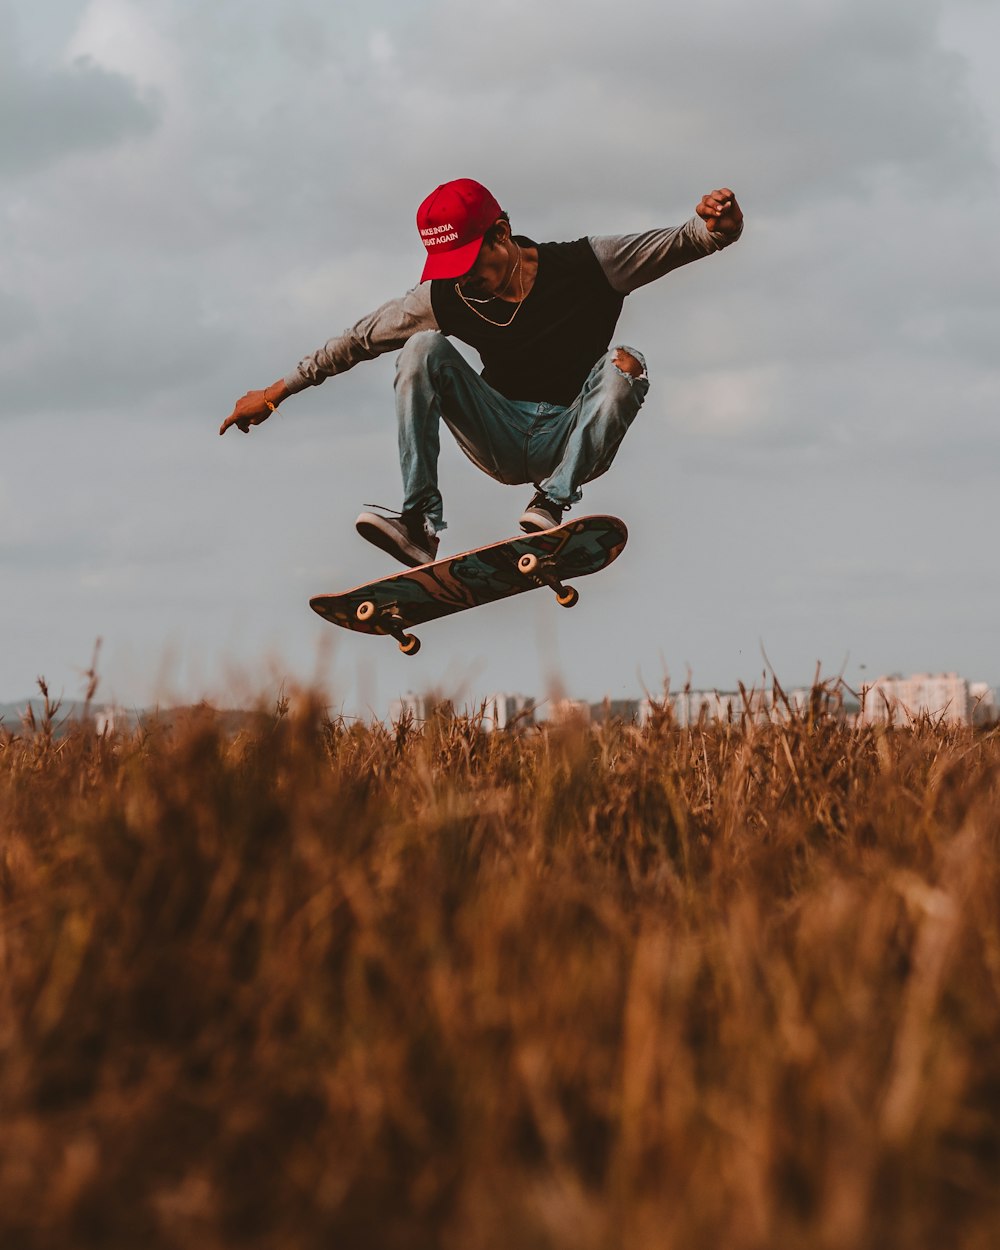 Man performing skateboard trick during daytime photo – Skateboarding Image Unsplash